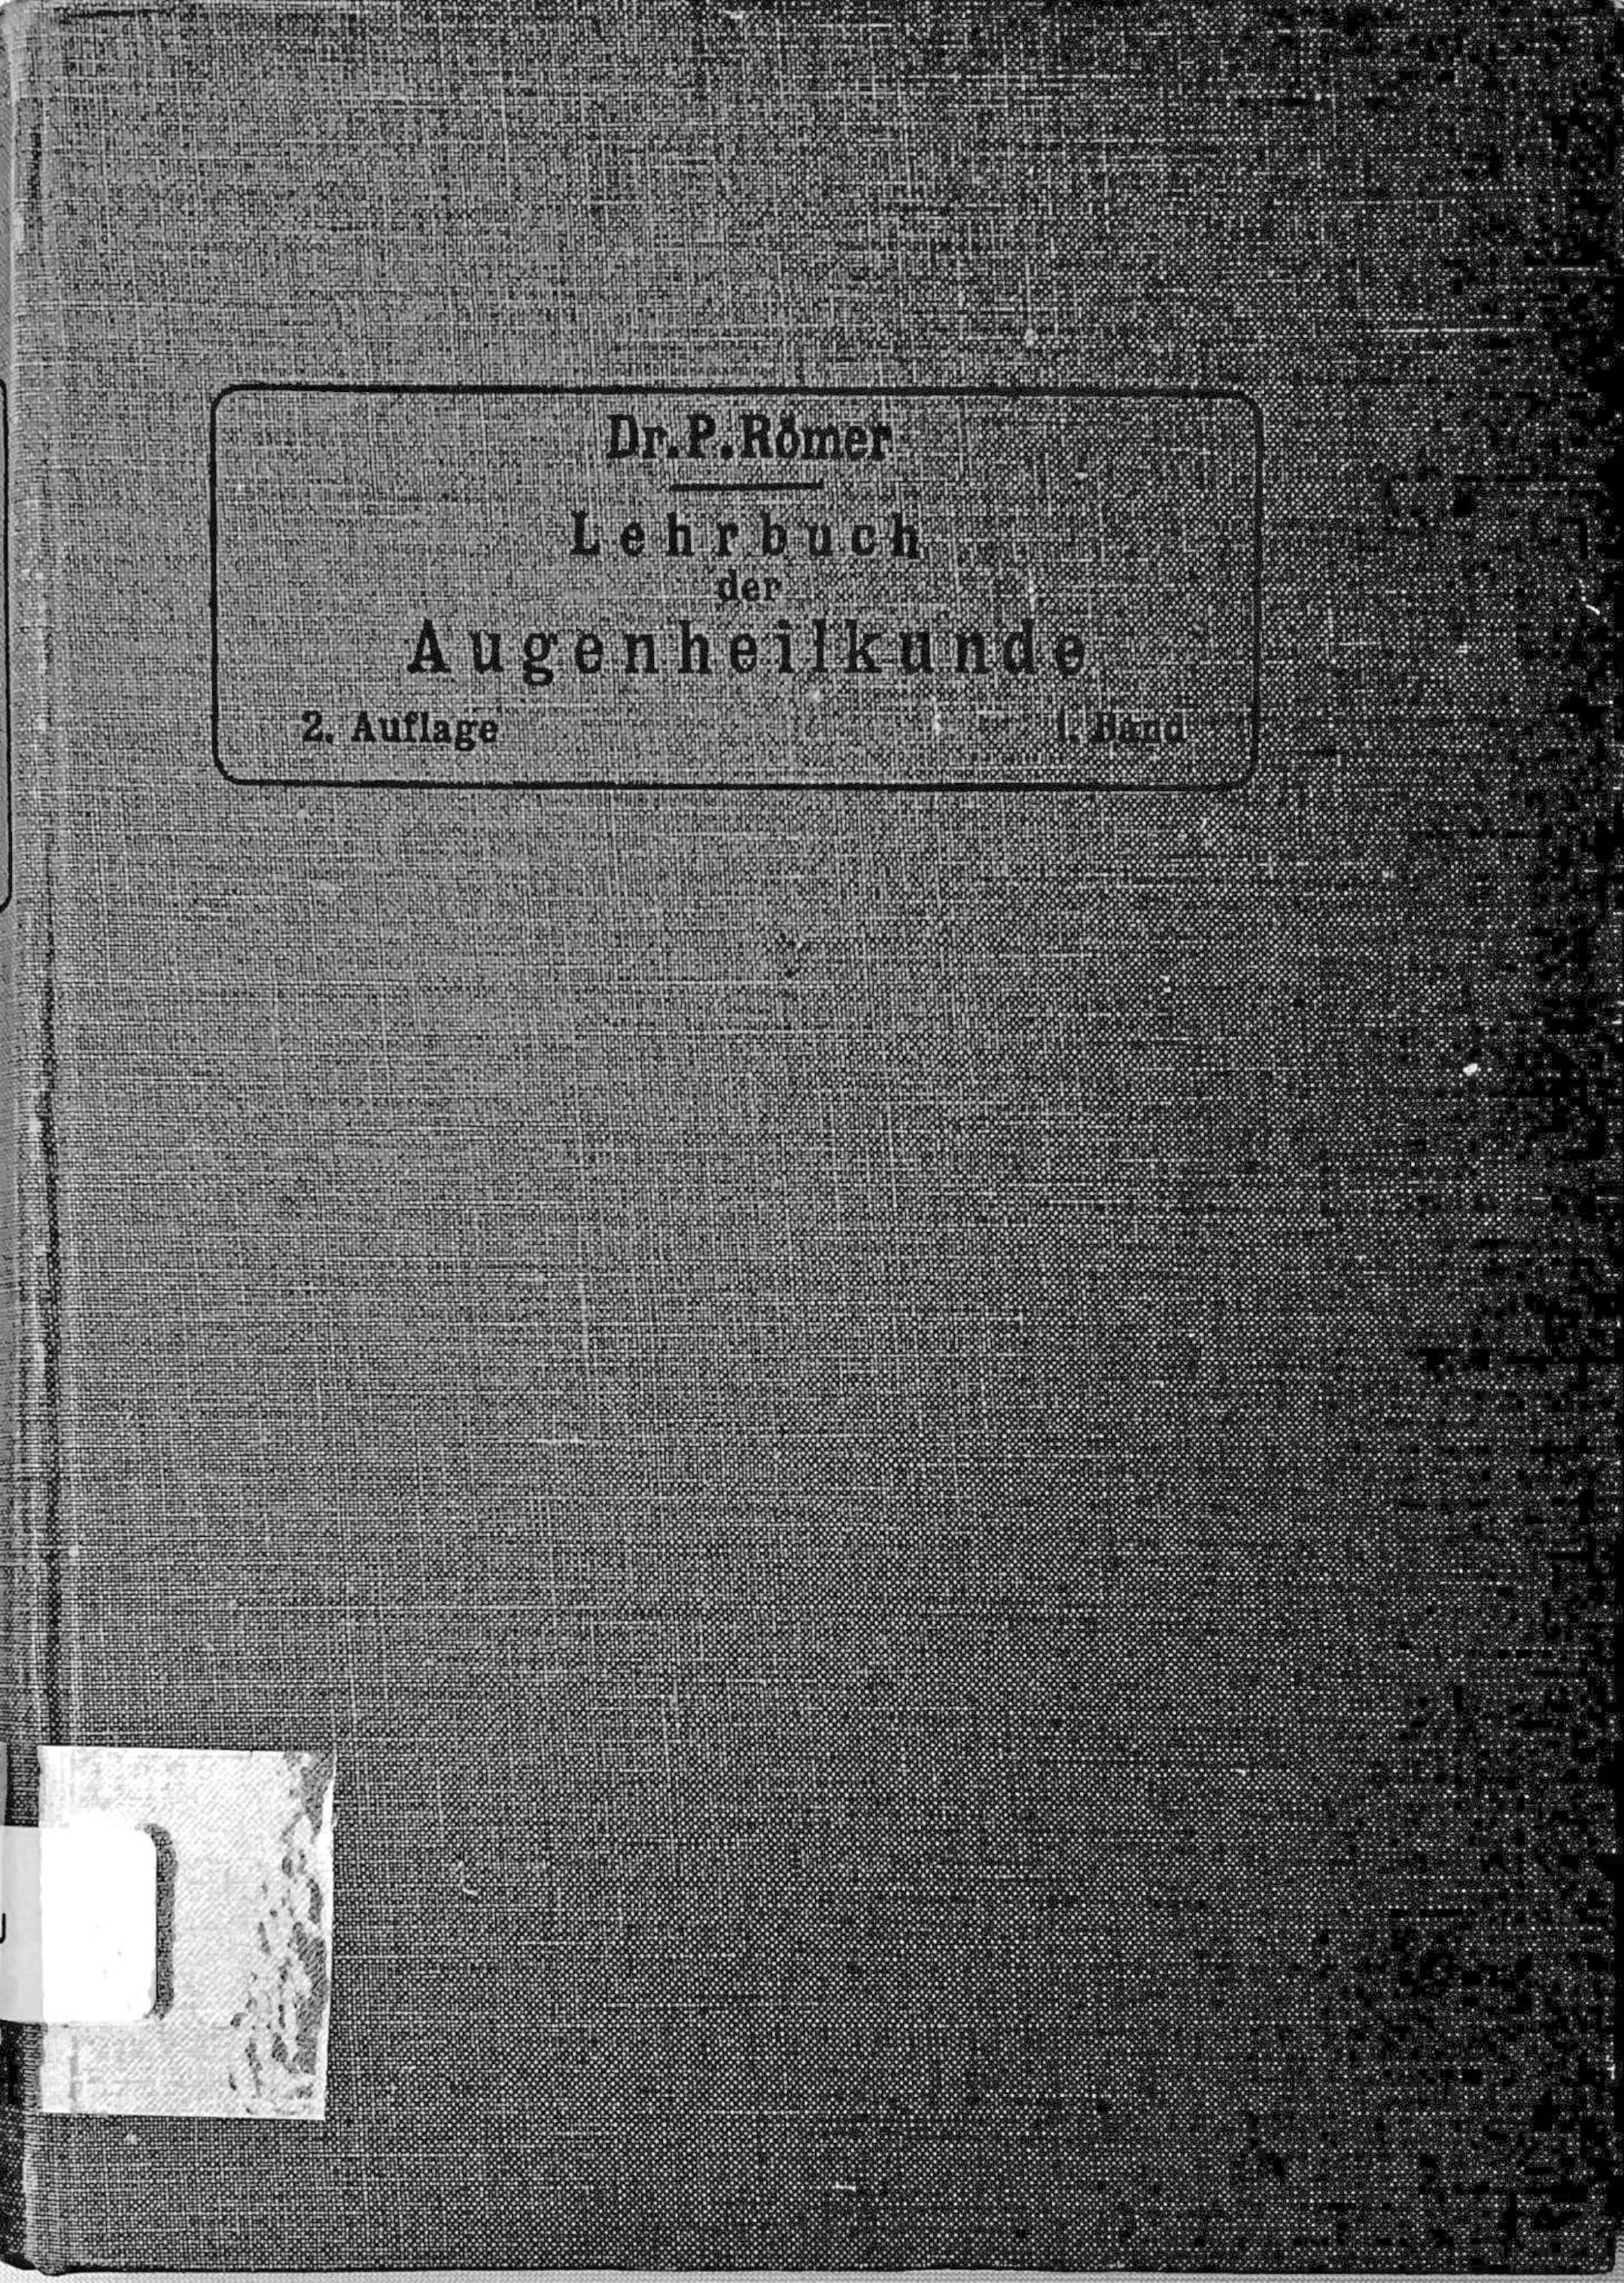 Lehrbuch der Augenheilkunde (Krankenhausmuseum Bielefeld e.V. CC BY-NC-SA)